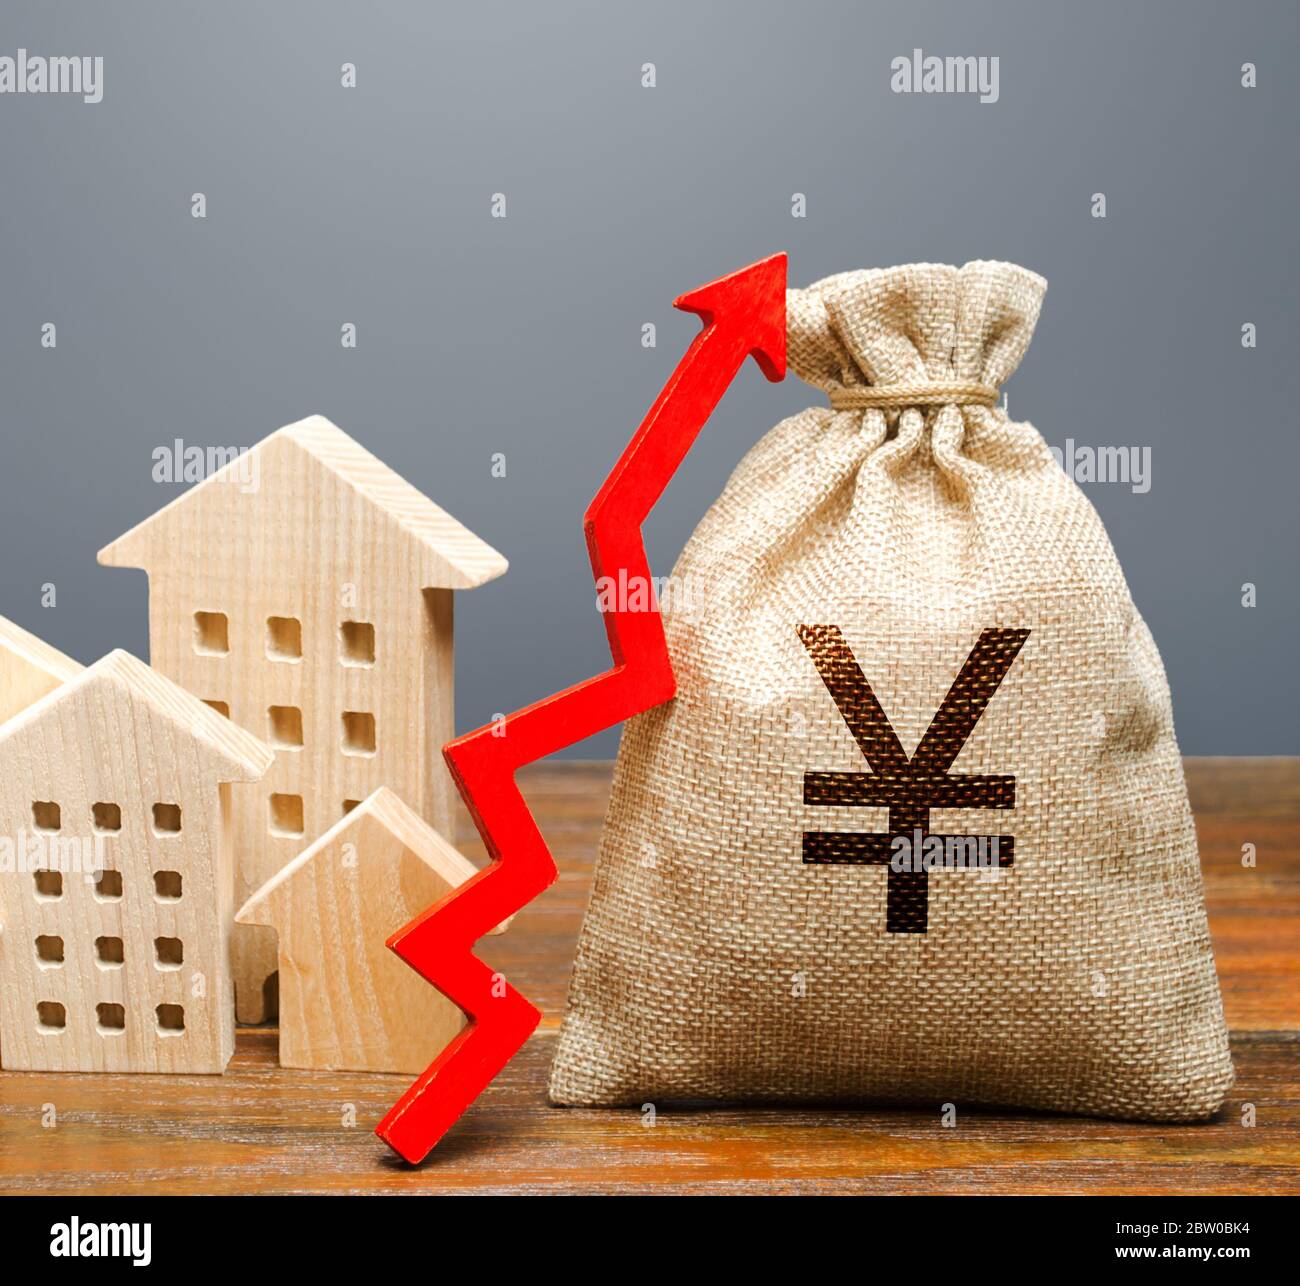 Maisons en bois et un sac d'argent avec une flèche vers le haut. Le concept d'augmentation du coût du logement. La croissance des taux de loyer et d'hypothèque. Augmentation des loyers, p Banque D'Images